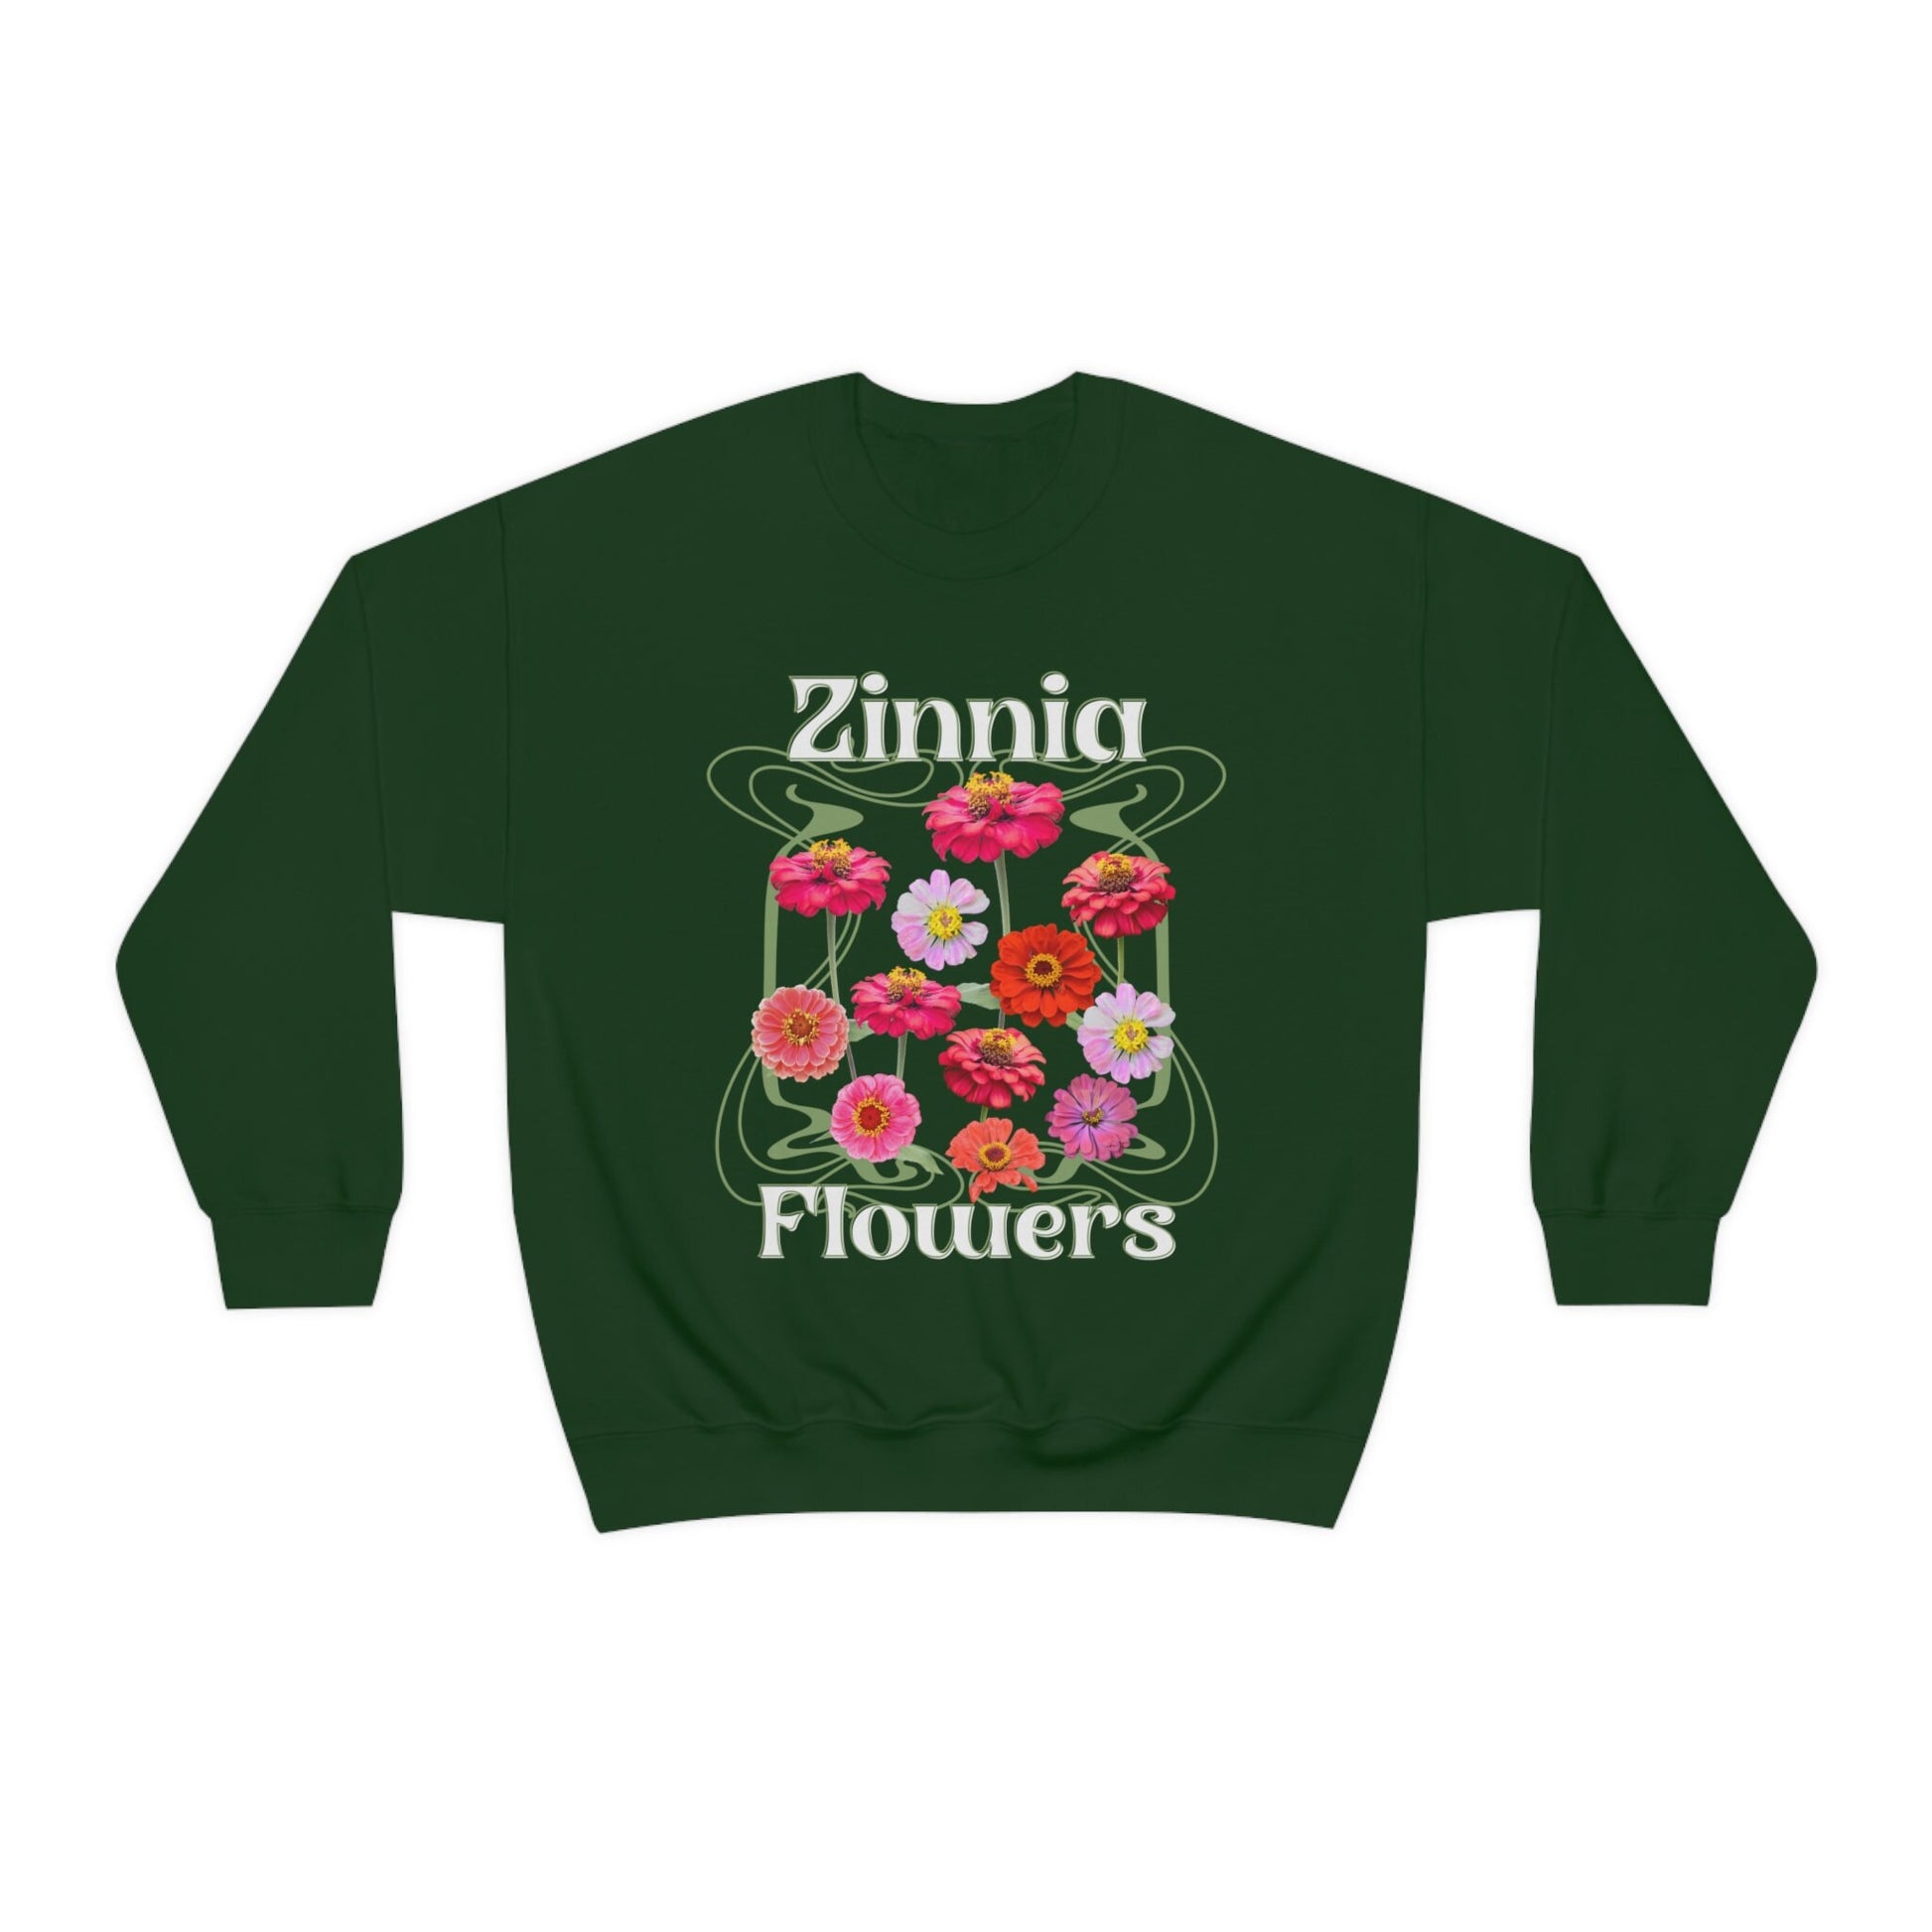 Zinnia Wild Flowers Crewneck Sweatshirt Cottagecore Clothes Boho Sweatshirt Cottagecore Sweater Pressed Flower Shirt Garden Lover Gift